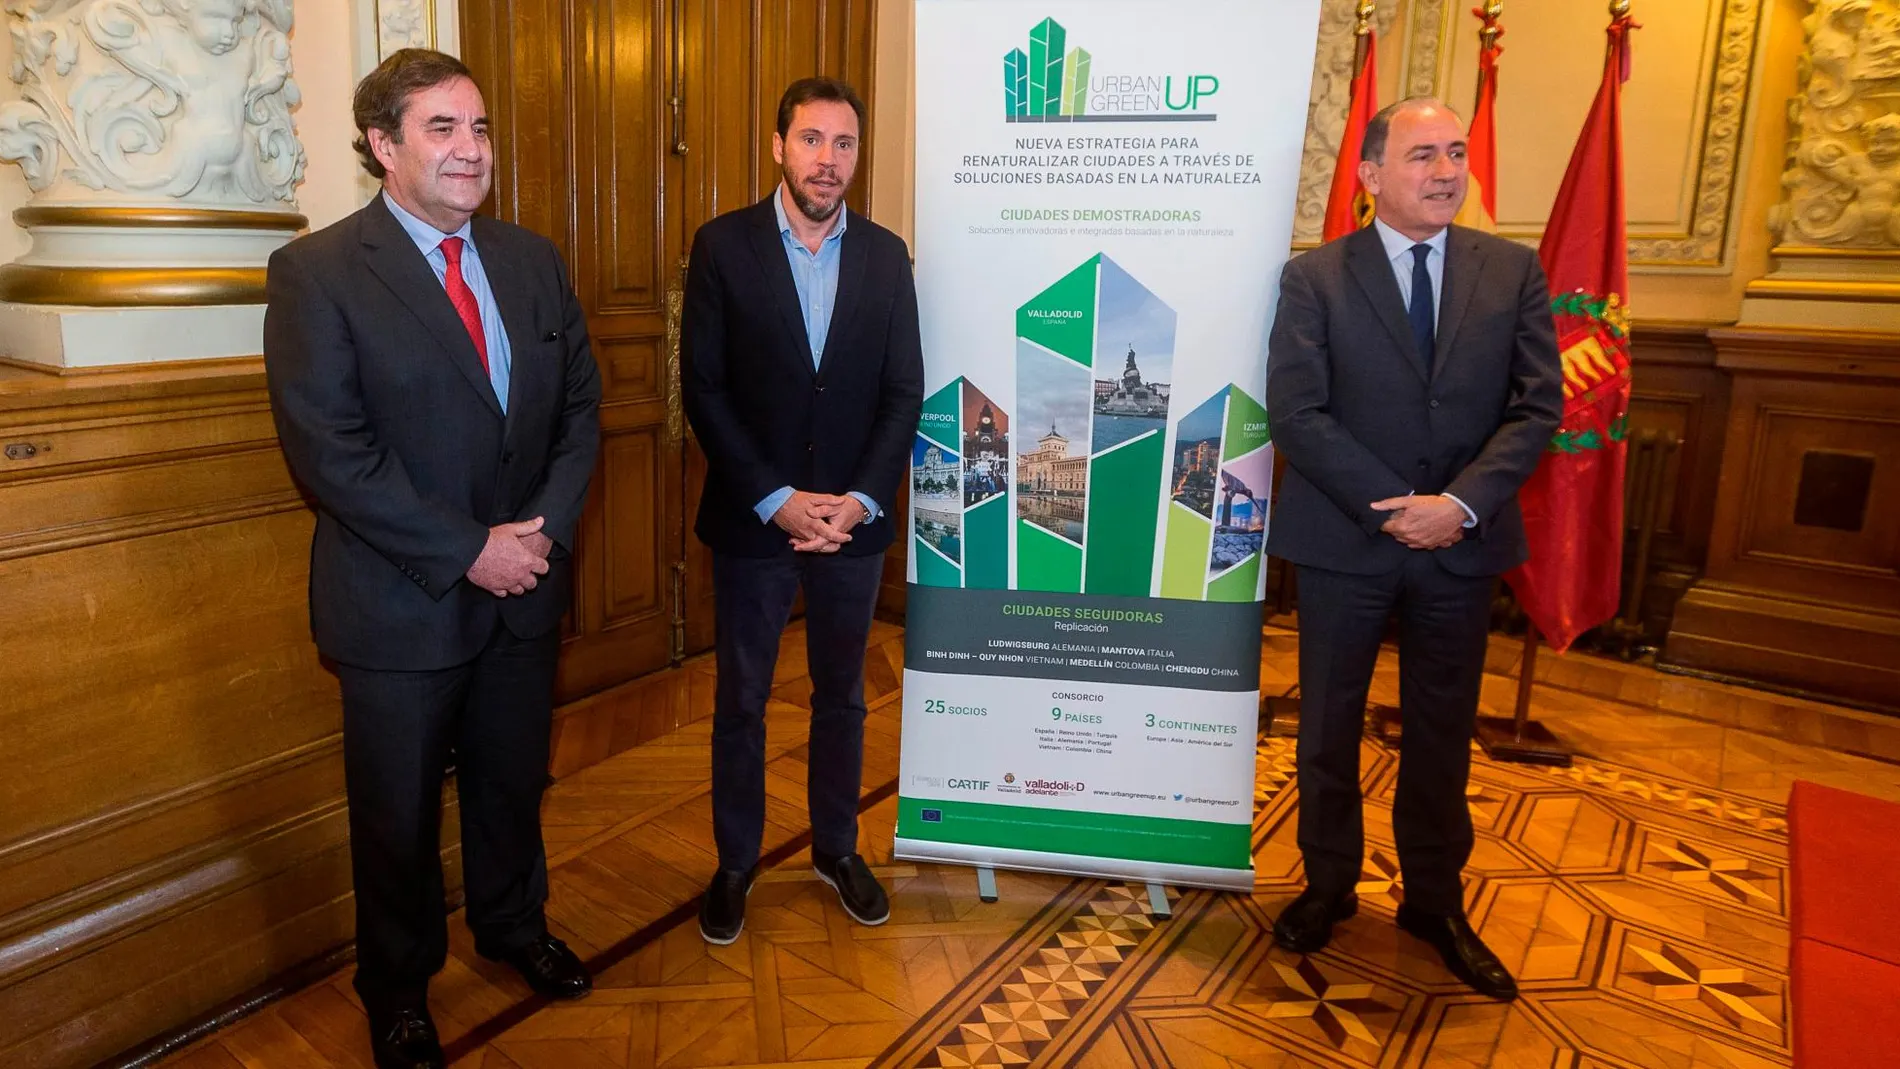 Óscar Puente presenta el proyecto junto al concejal Antonio Gato e Ignacio Castellote, representante de El Corte Inglés